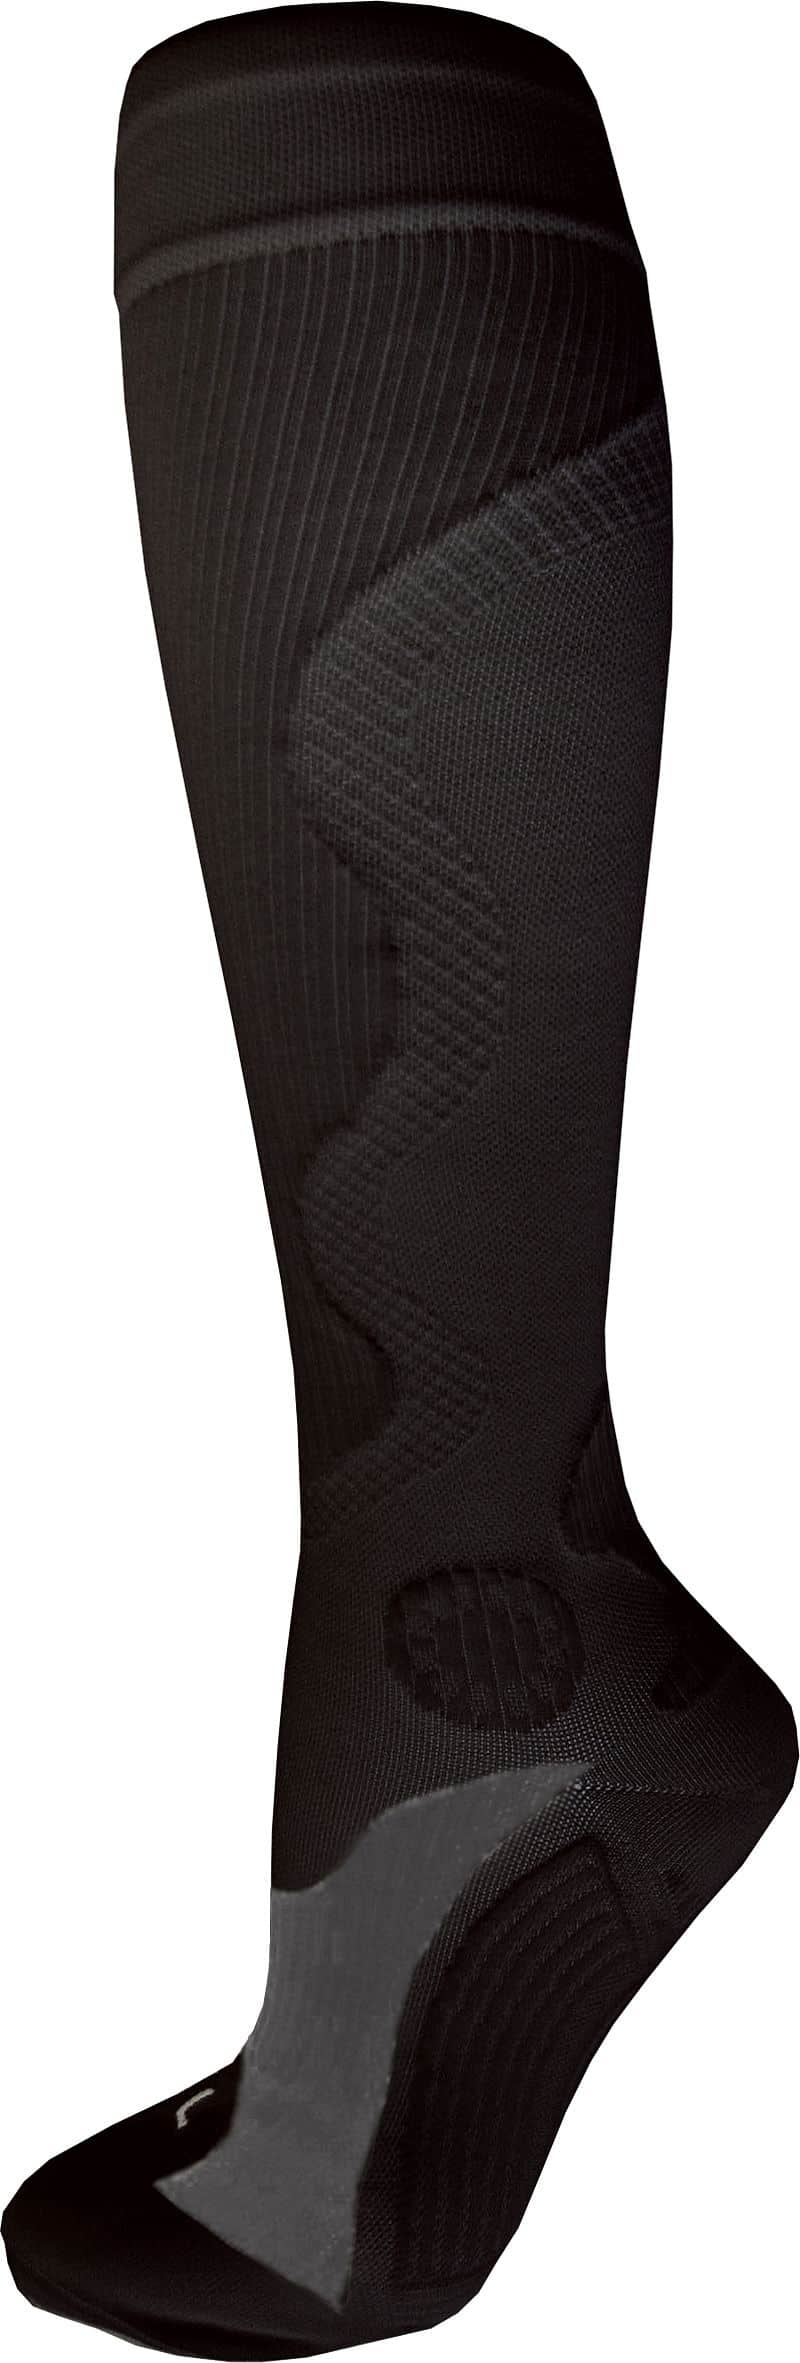 Kompresní sportovní ponožky WAVE, černé Bota velikost: XL